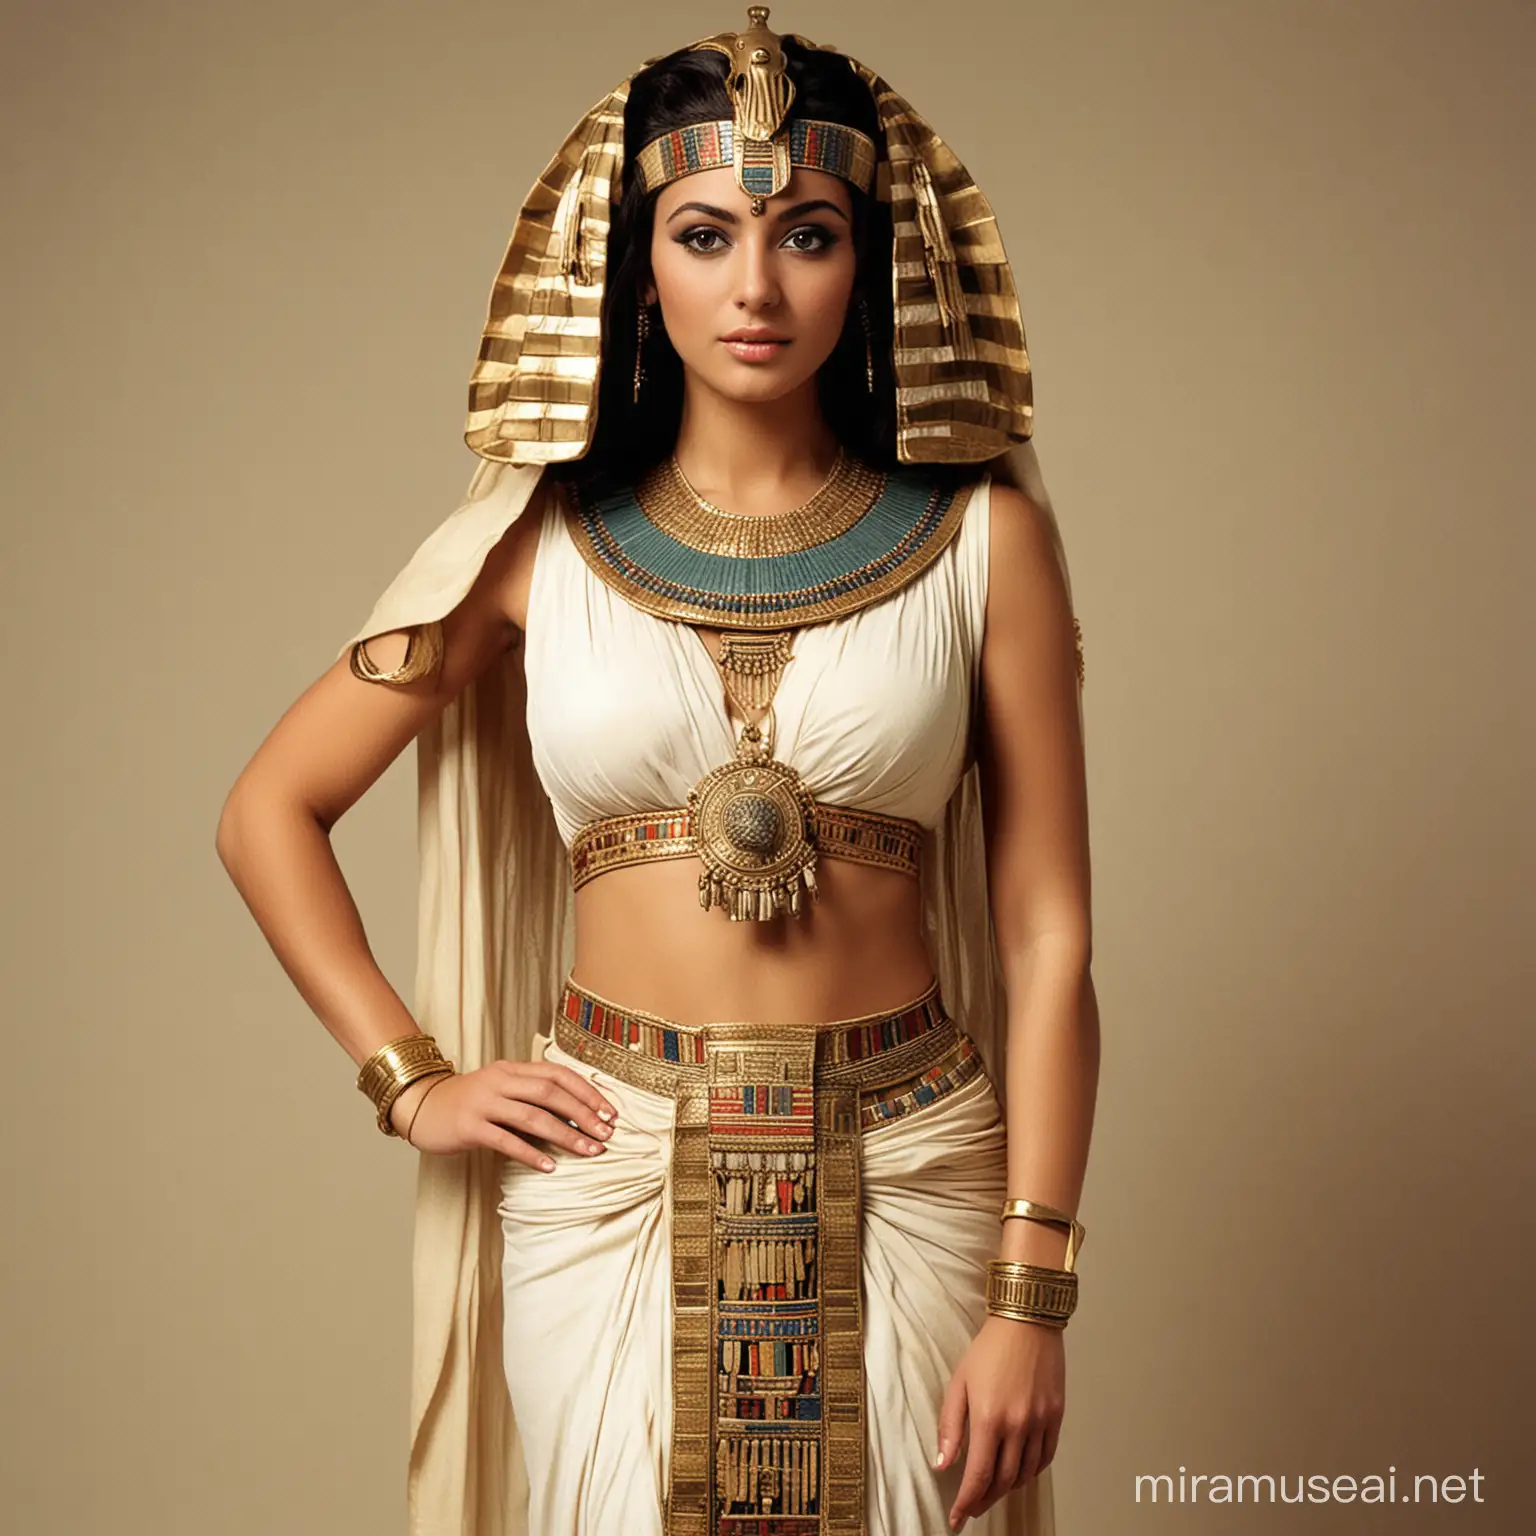 Sobekneferu Ancient Egyptian Queen in Ornate Garb